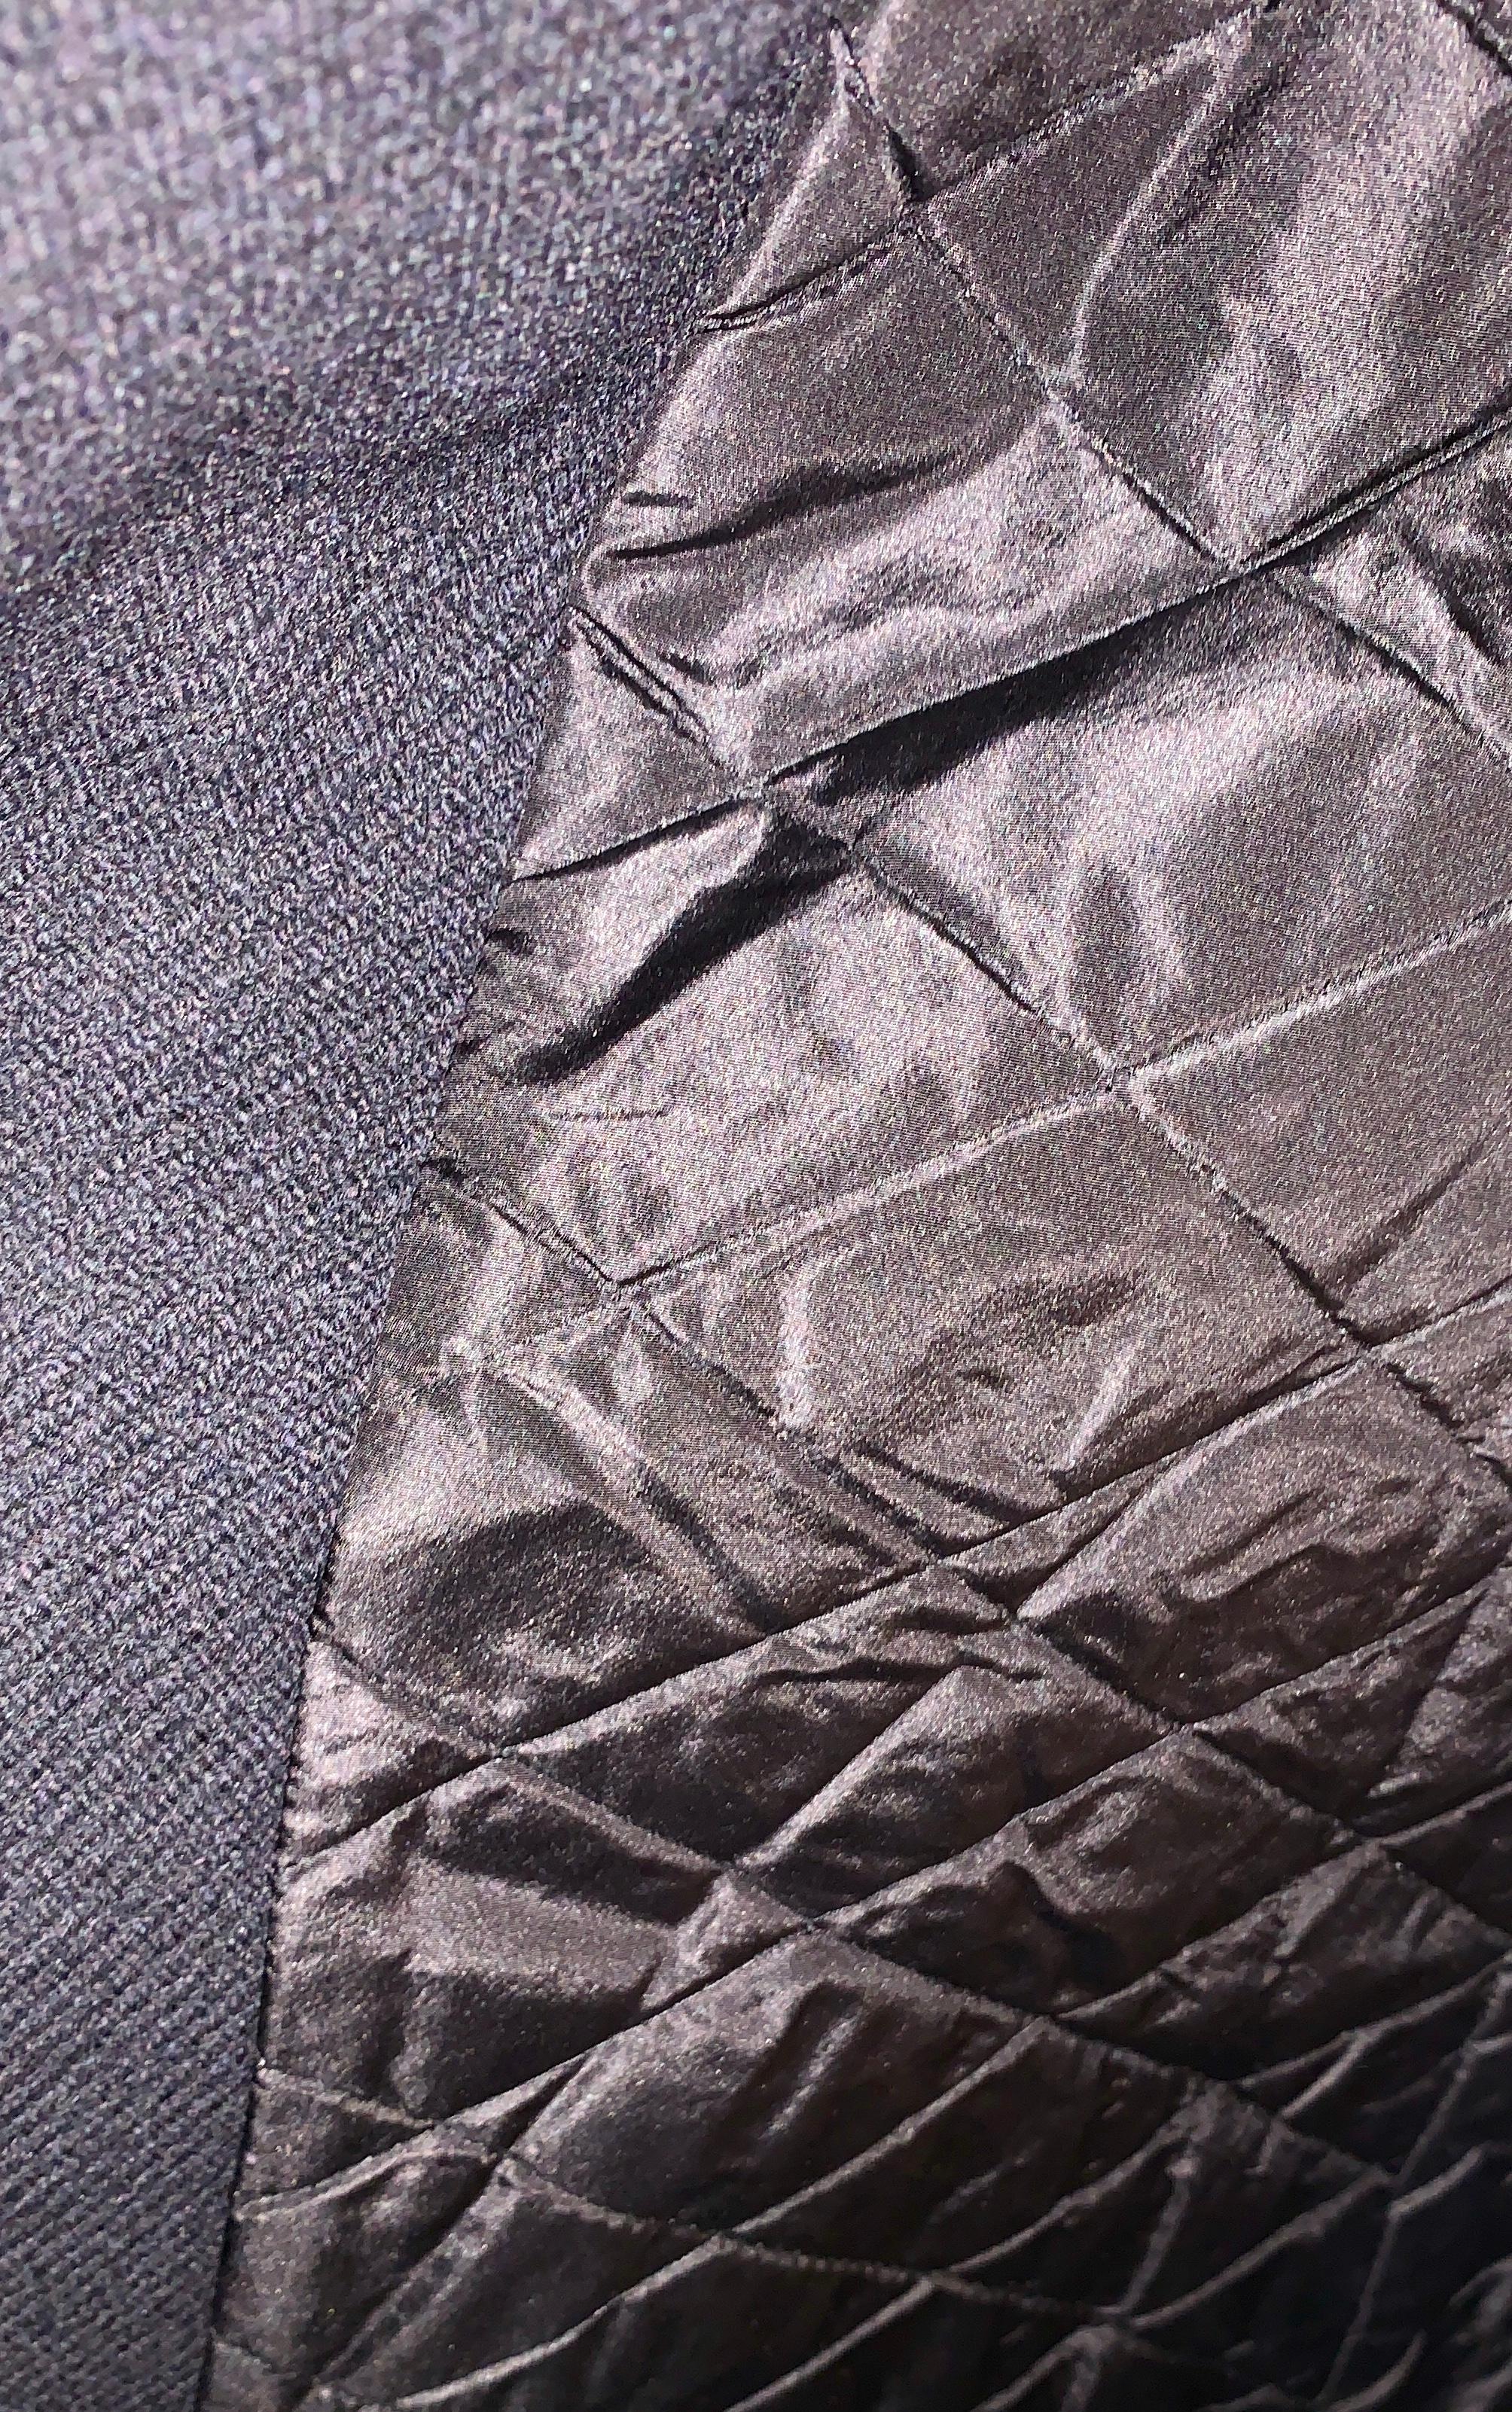 Louis Vuitton Paris Mink Collar Ladies Black Wool Coat Size 38 US Size 6 For Sale 5